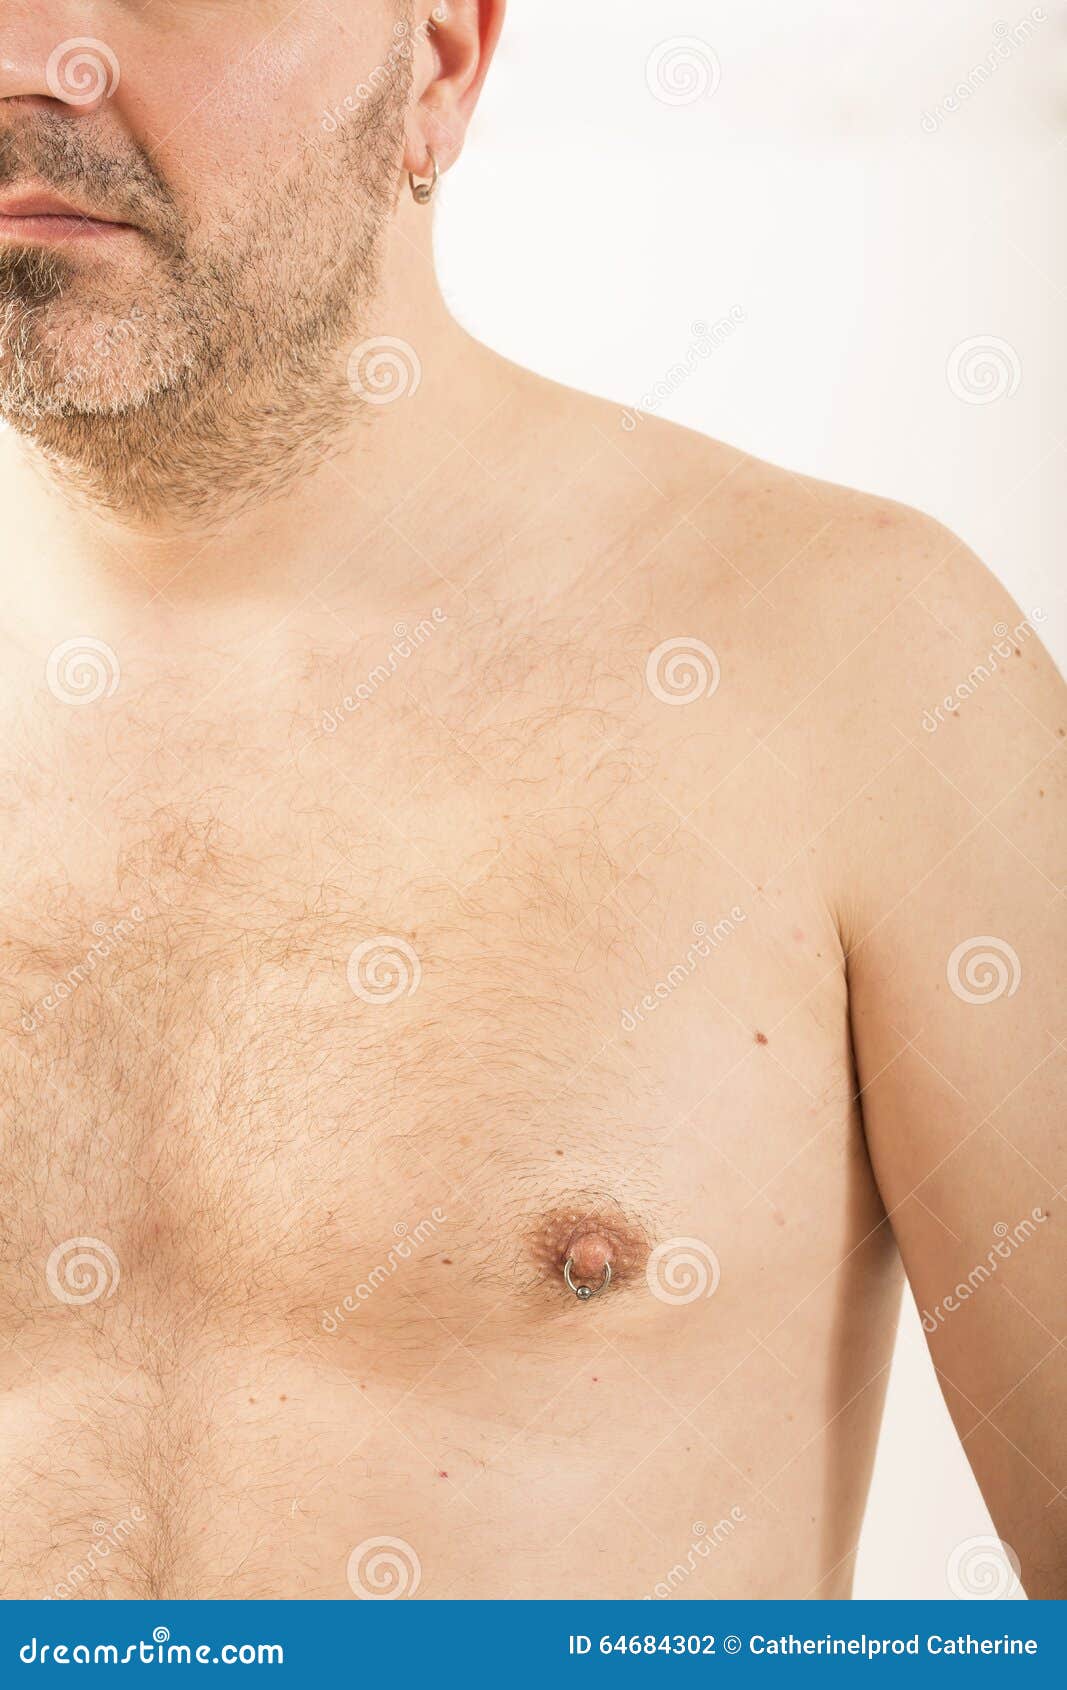 мужская грудь с сосками фото 89